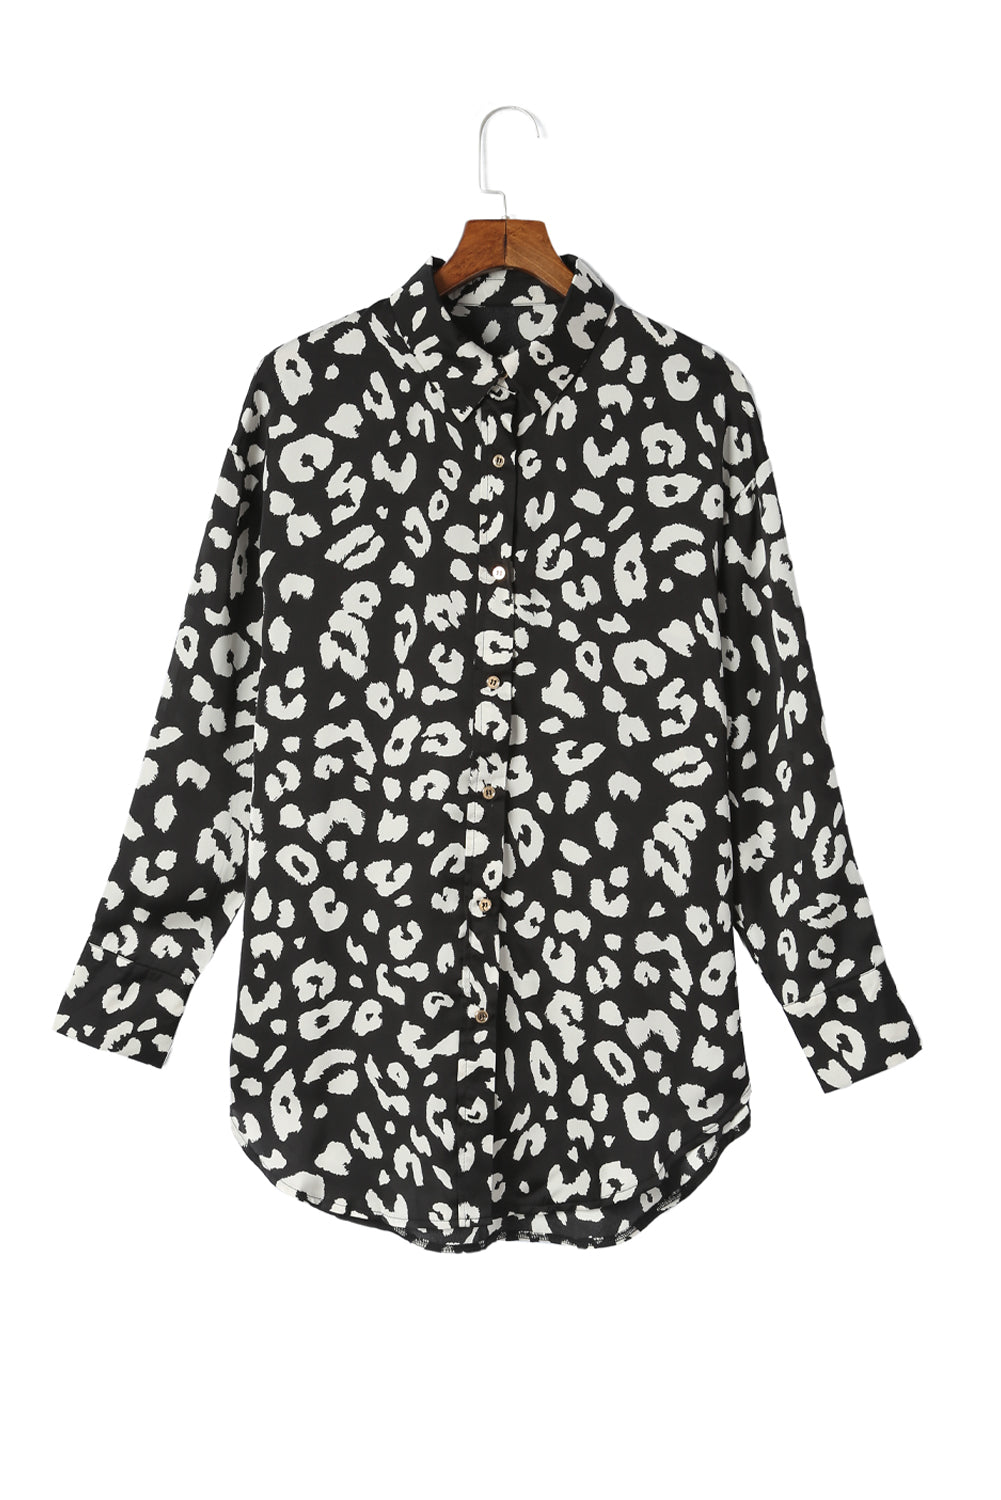 Camicia tunica con stampa leopardata nera